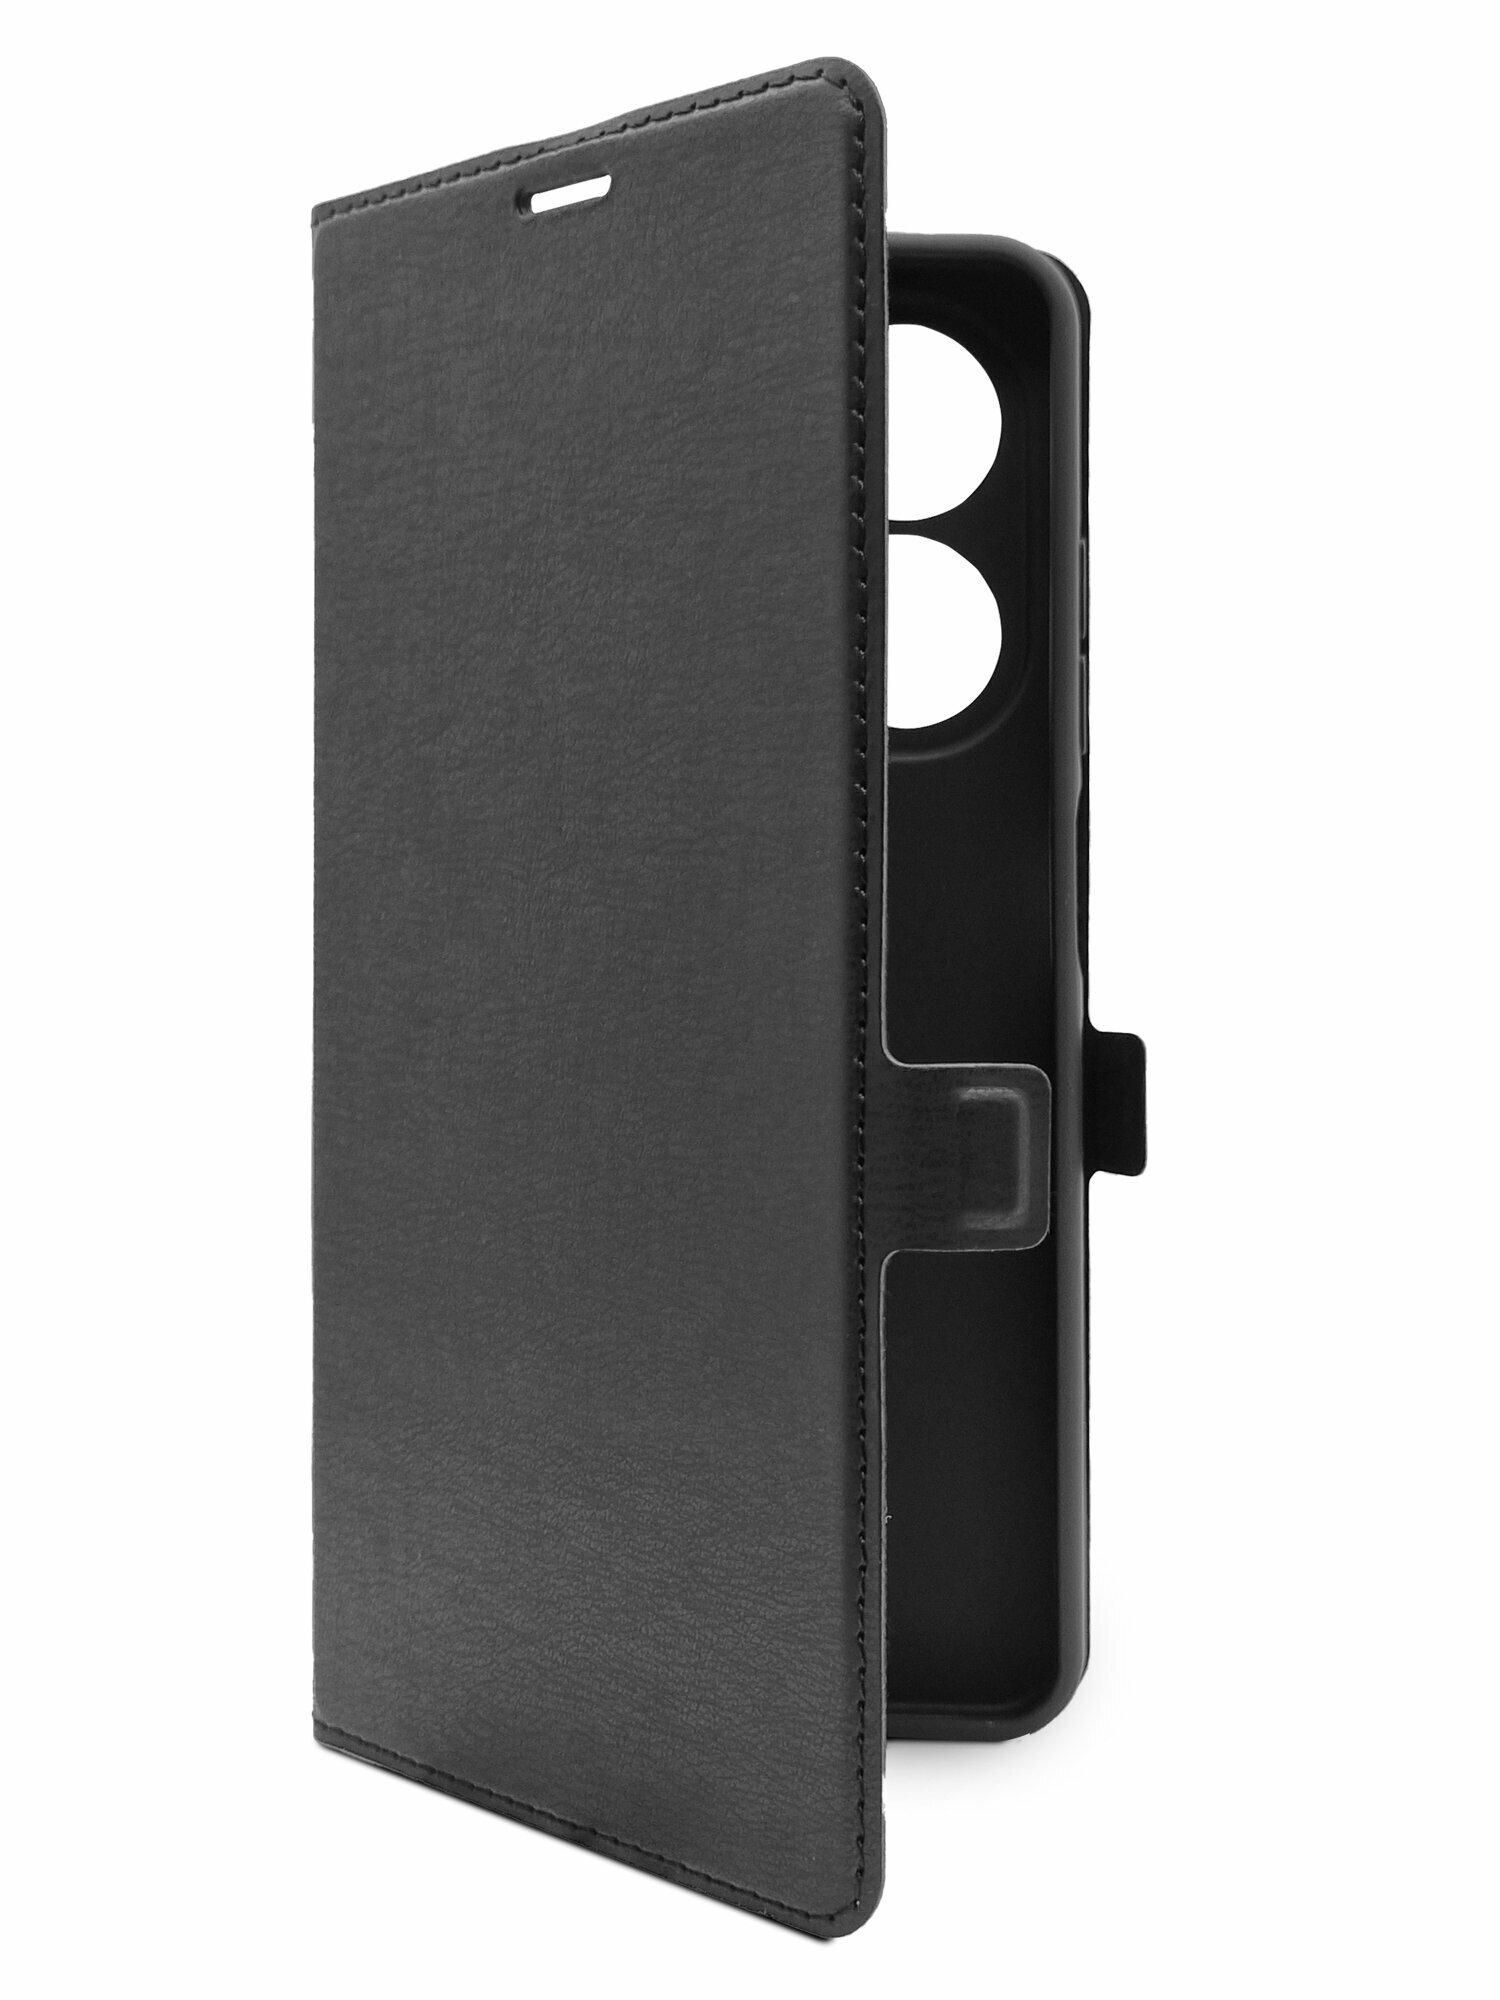 Чехол на Tecno Spark 20 (Техно Спарк 20) черный книжка эко-кожа с функцией подставки отделением для пластиковых карт и магнитами Book case, Miuko